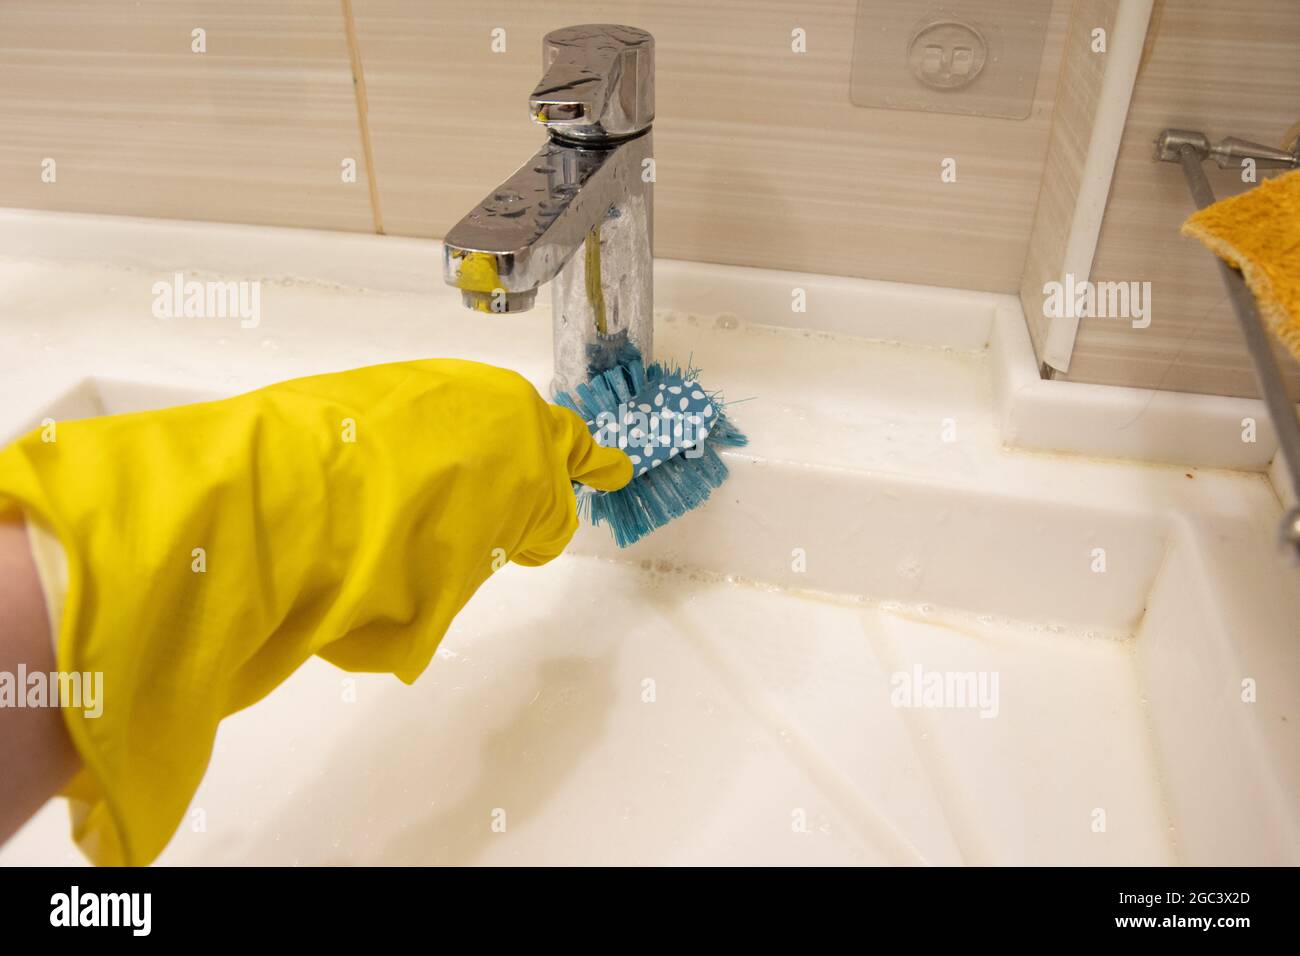 Una mano in un guanto giallo pulisce il lavandino con una spazzola blu sull'impugnatura. Il concetto di lavoro a casa, disinfezione. Foto Stock